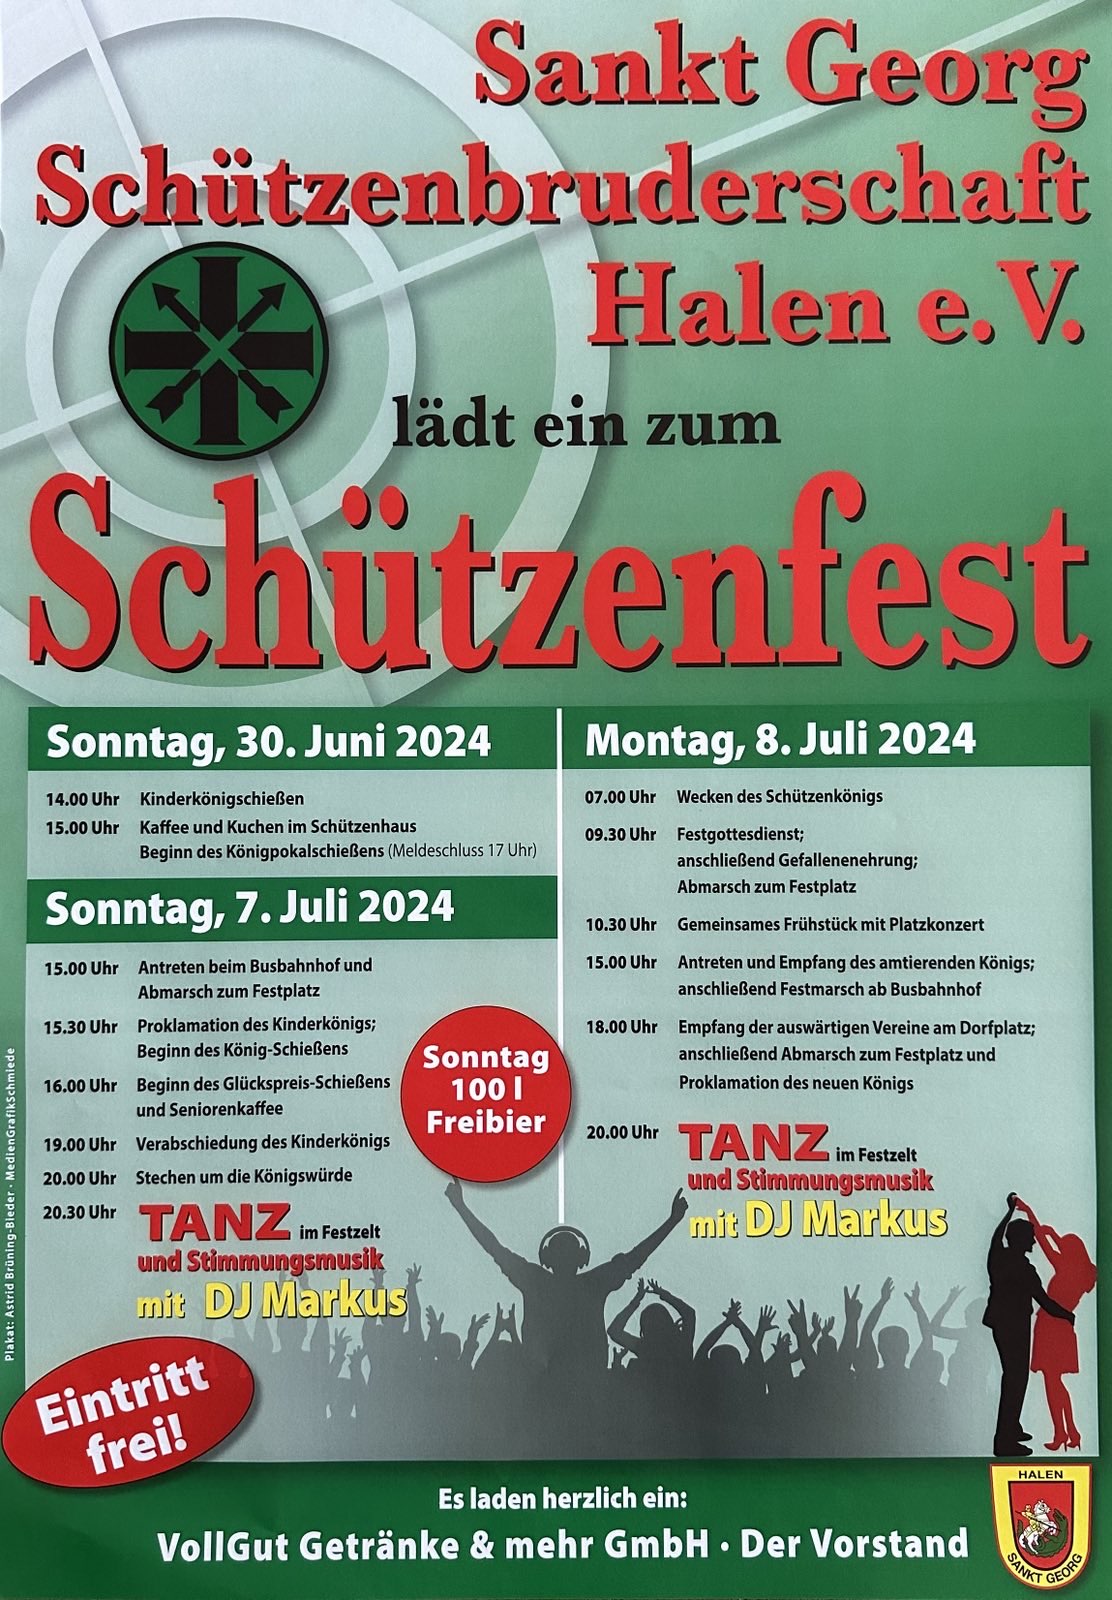 Mehr über den Artikel erfahren Schützenfest Sankt Georg Schützenbruderschaft Halen e.V.